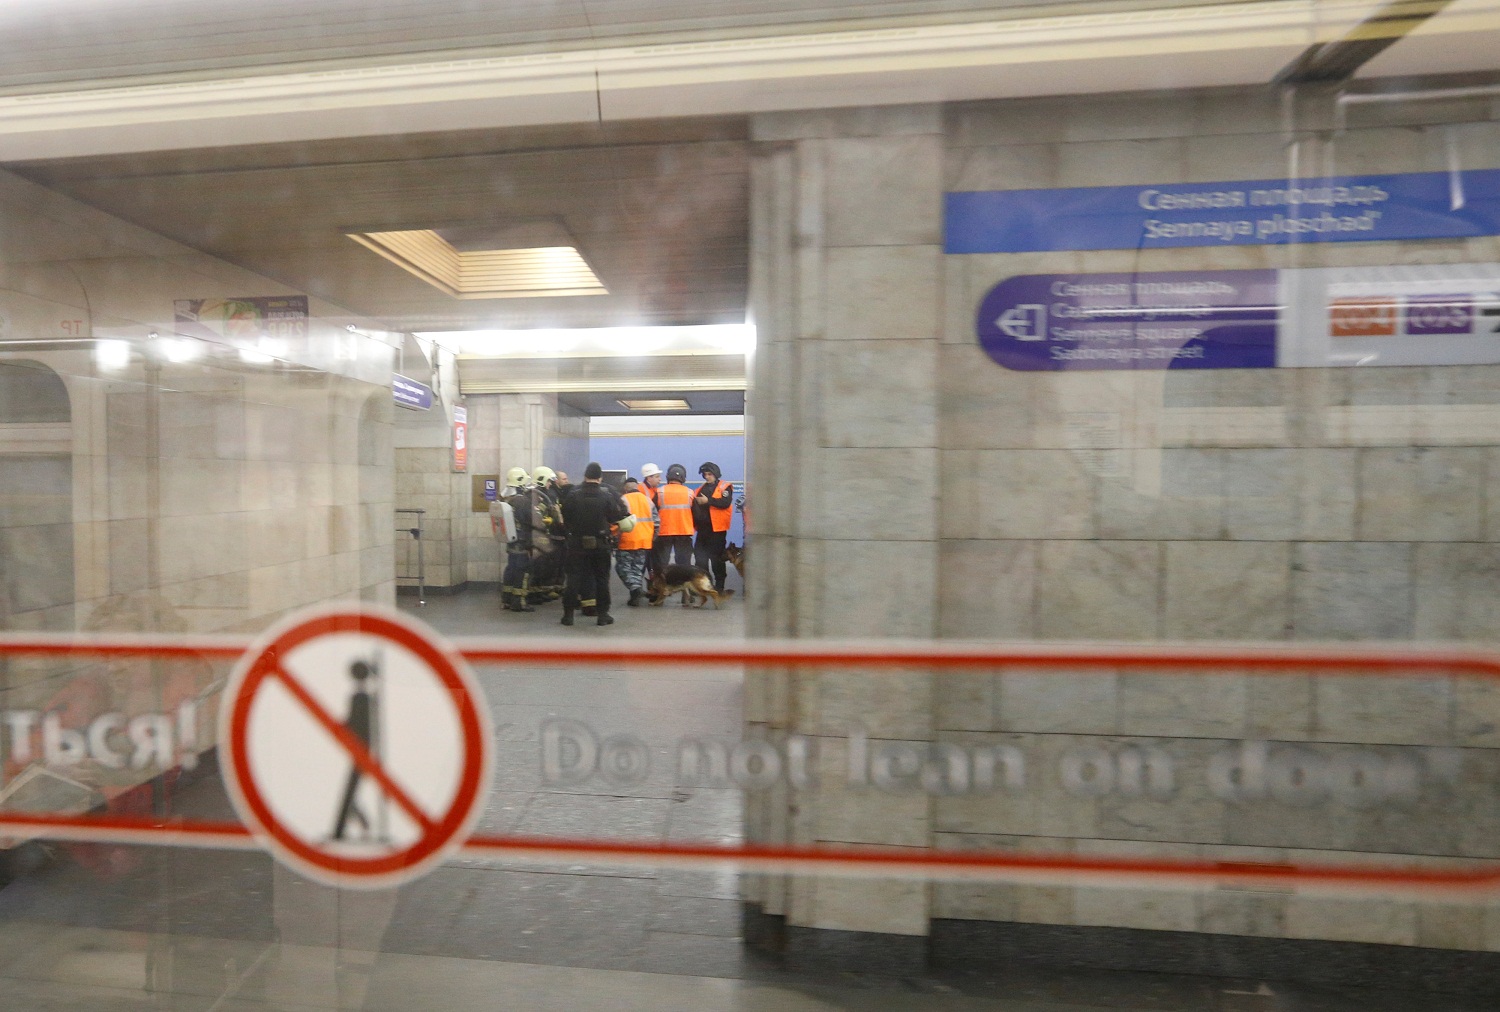 Vuelven a cerrar estación de metro de San Petersburgo tras aviso de bomba